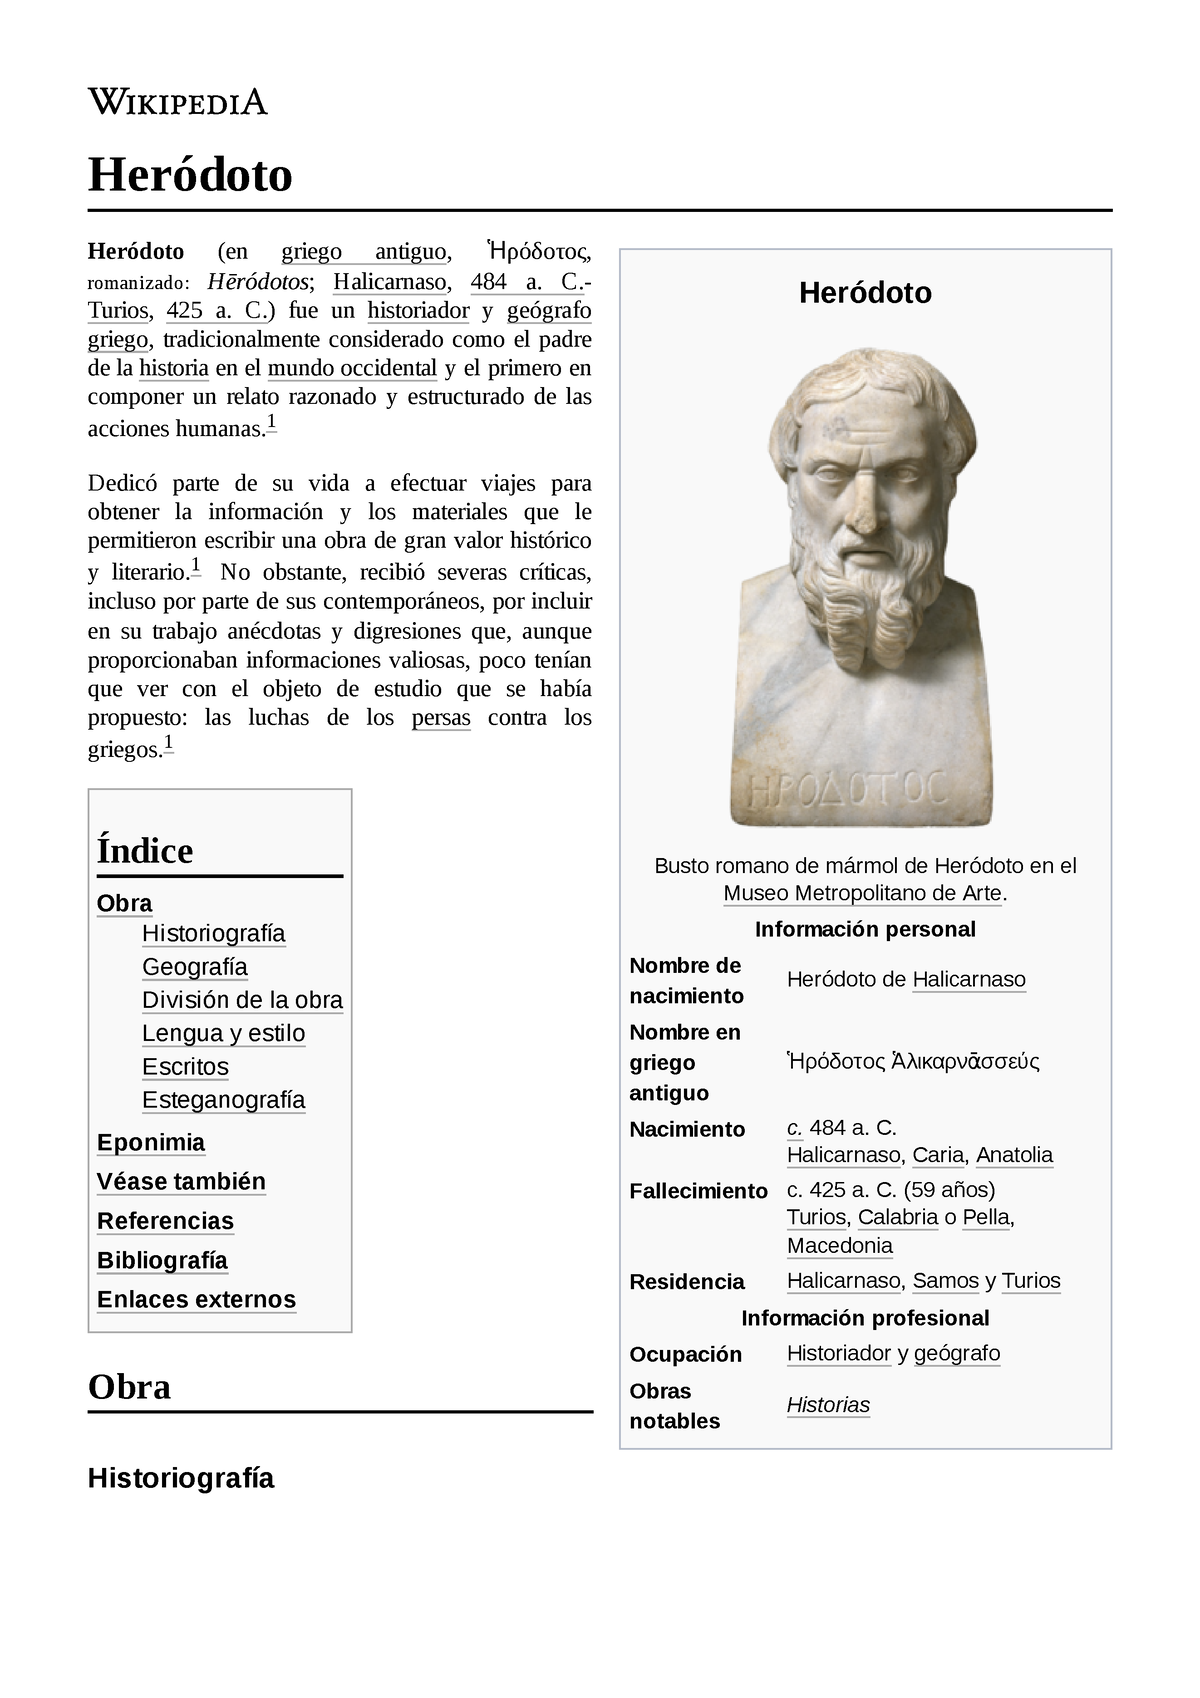 Heródoto - descripcion - Heródoto Busto romano de mármol de Heródoto en el  Museo Metropolitano de - Studocu